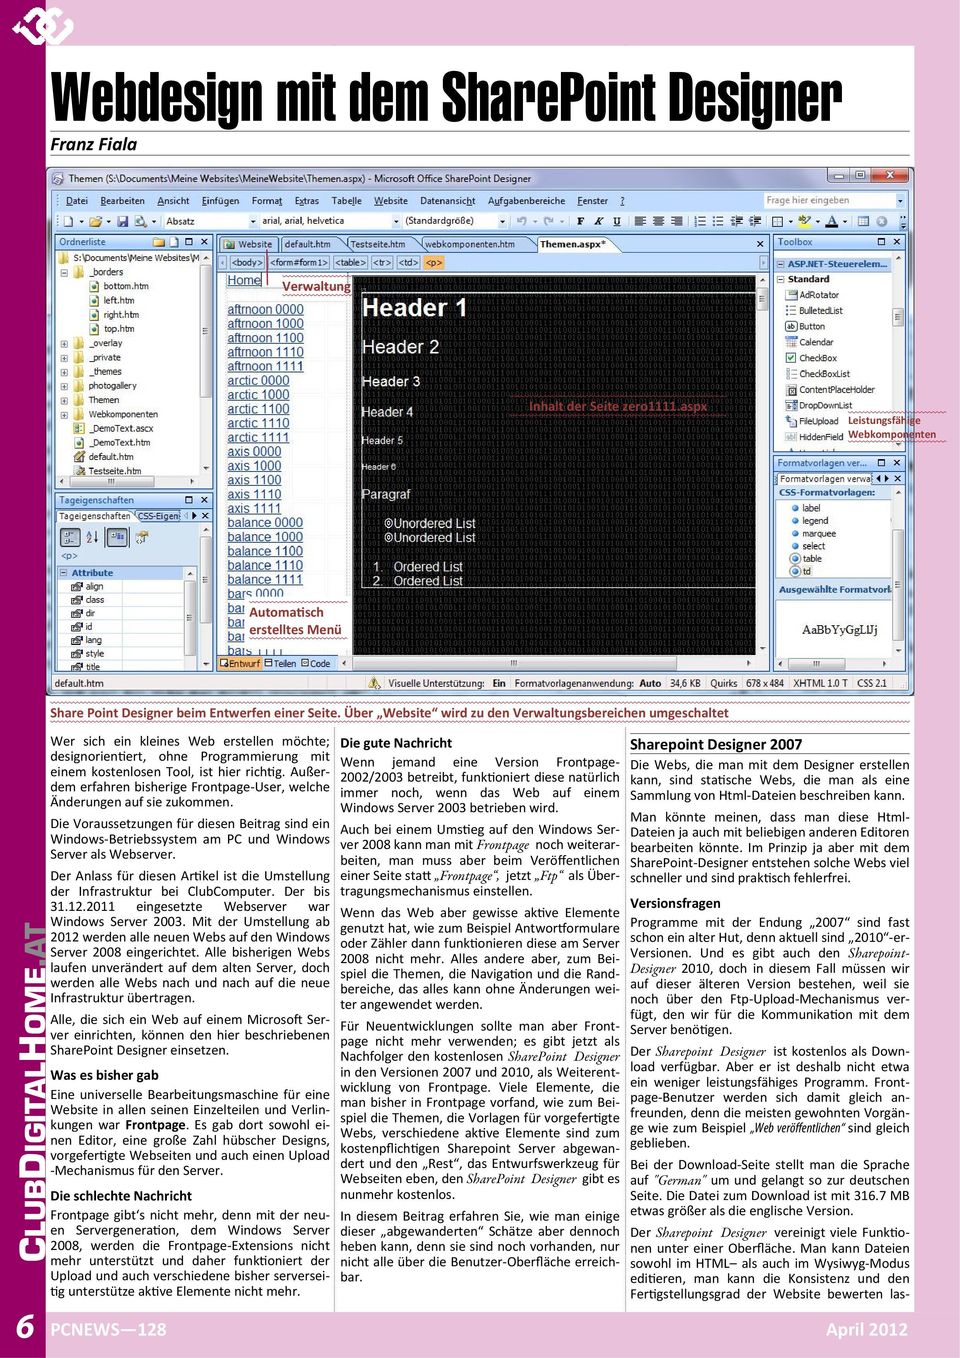 aspx Leistungsfähige Webkomponenten Automa sch erstelltes Menü Share Point Designer beim Entwerfen einer Seite.